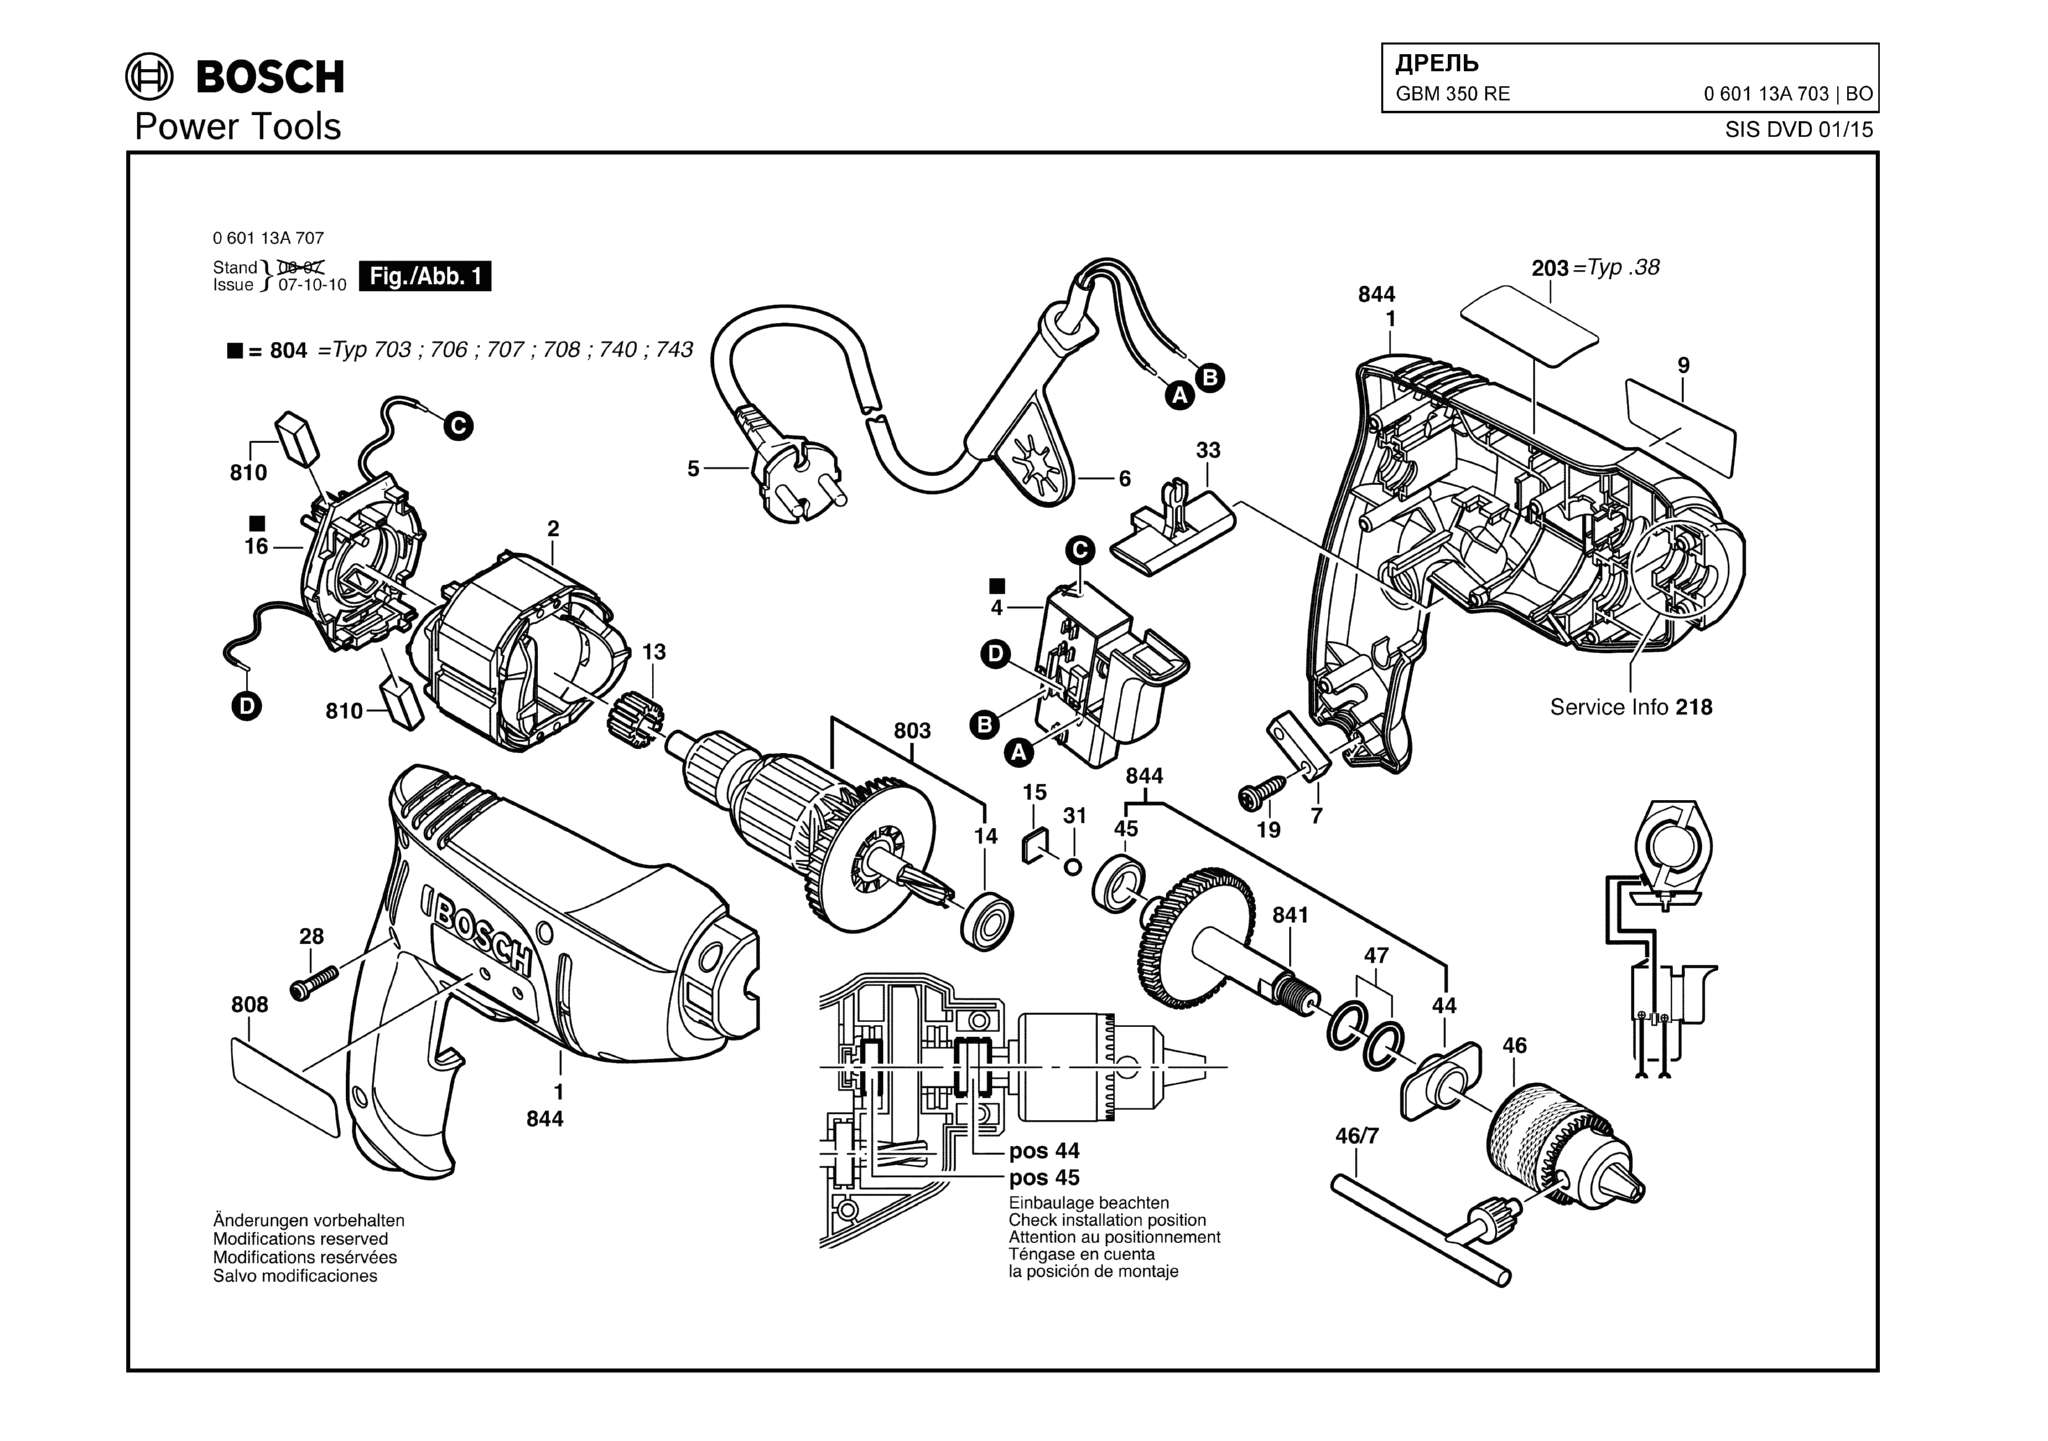 Запчасти, схема и деталировка Bosch GBM 350 RE (ТИП 060113A703)